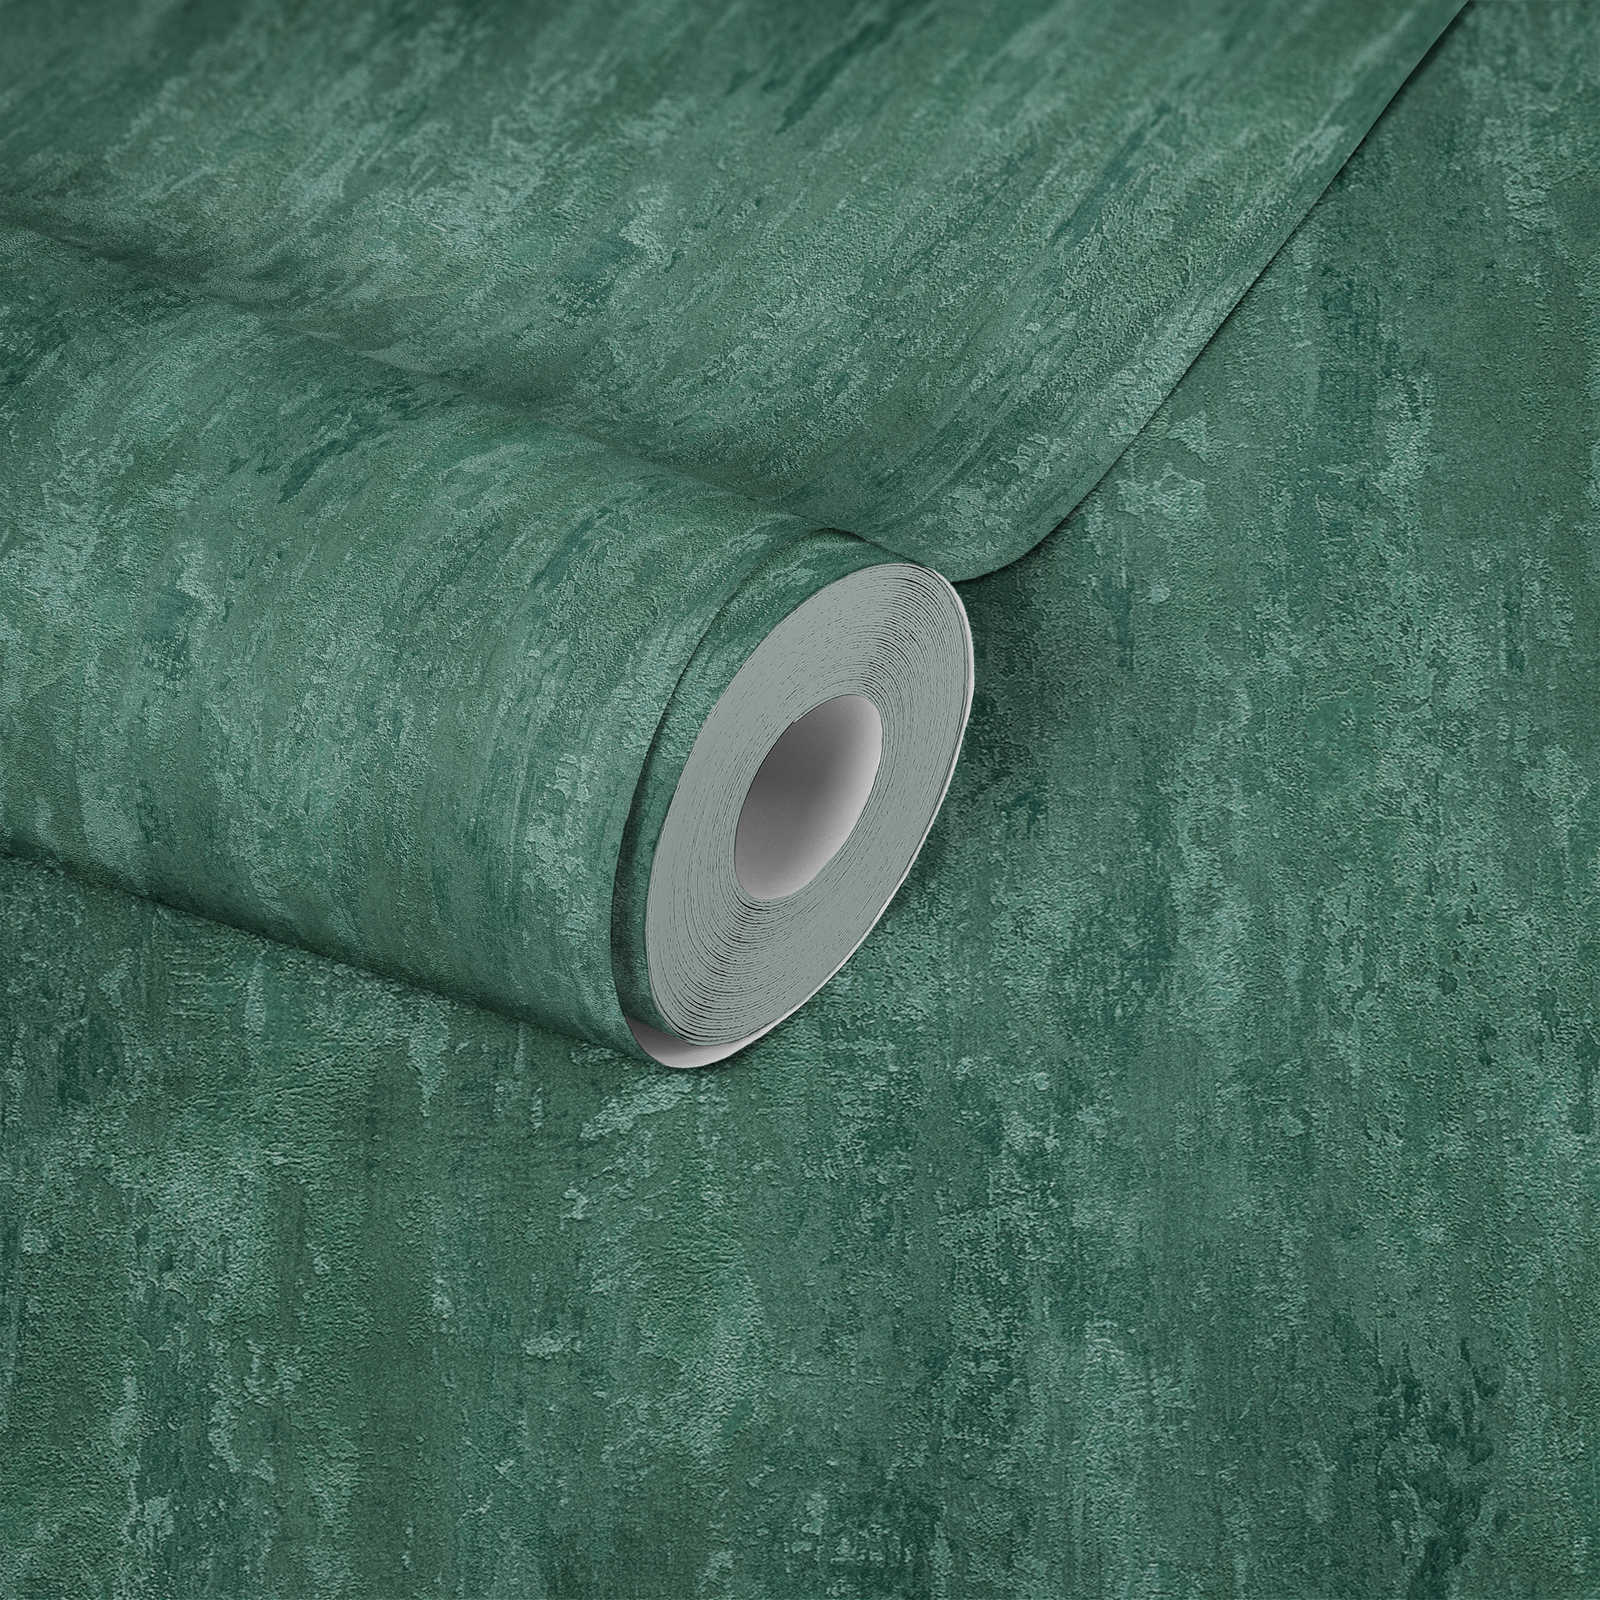             Papier peint style industriel avec effet structuré - vert, métallique
        